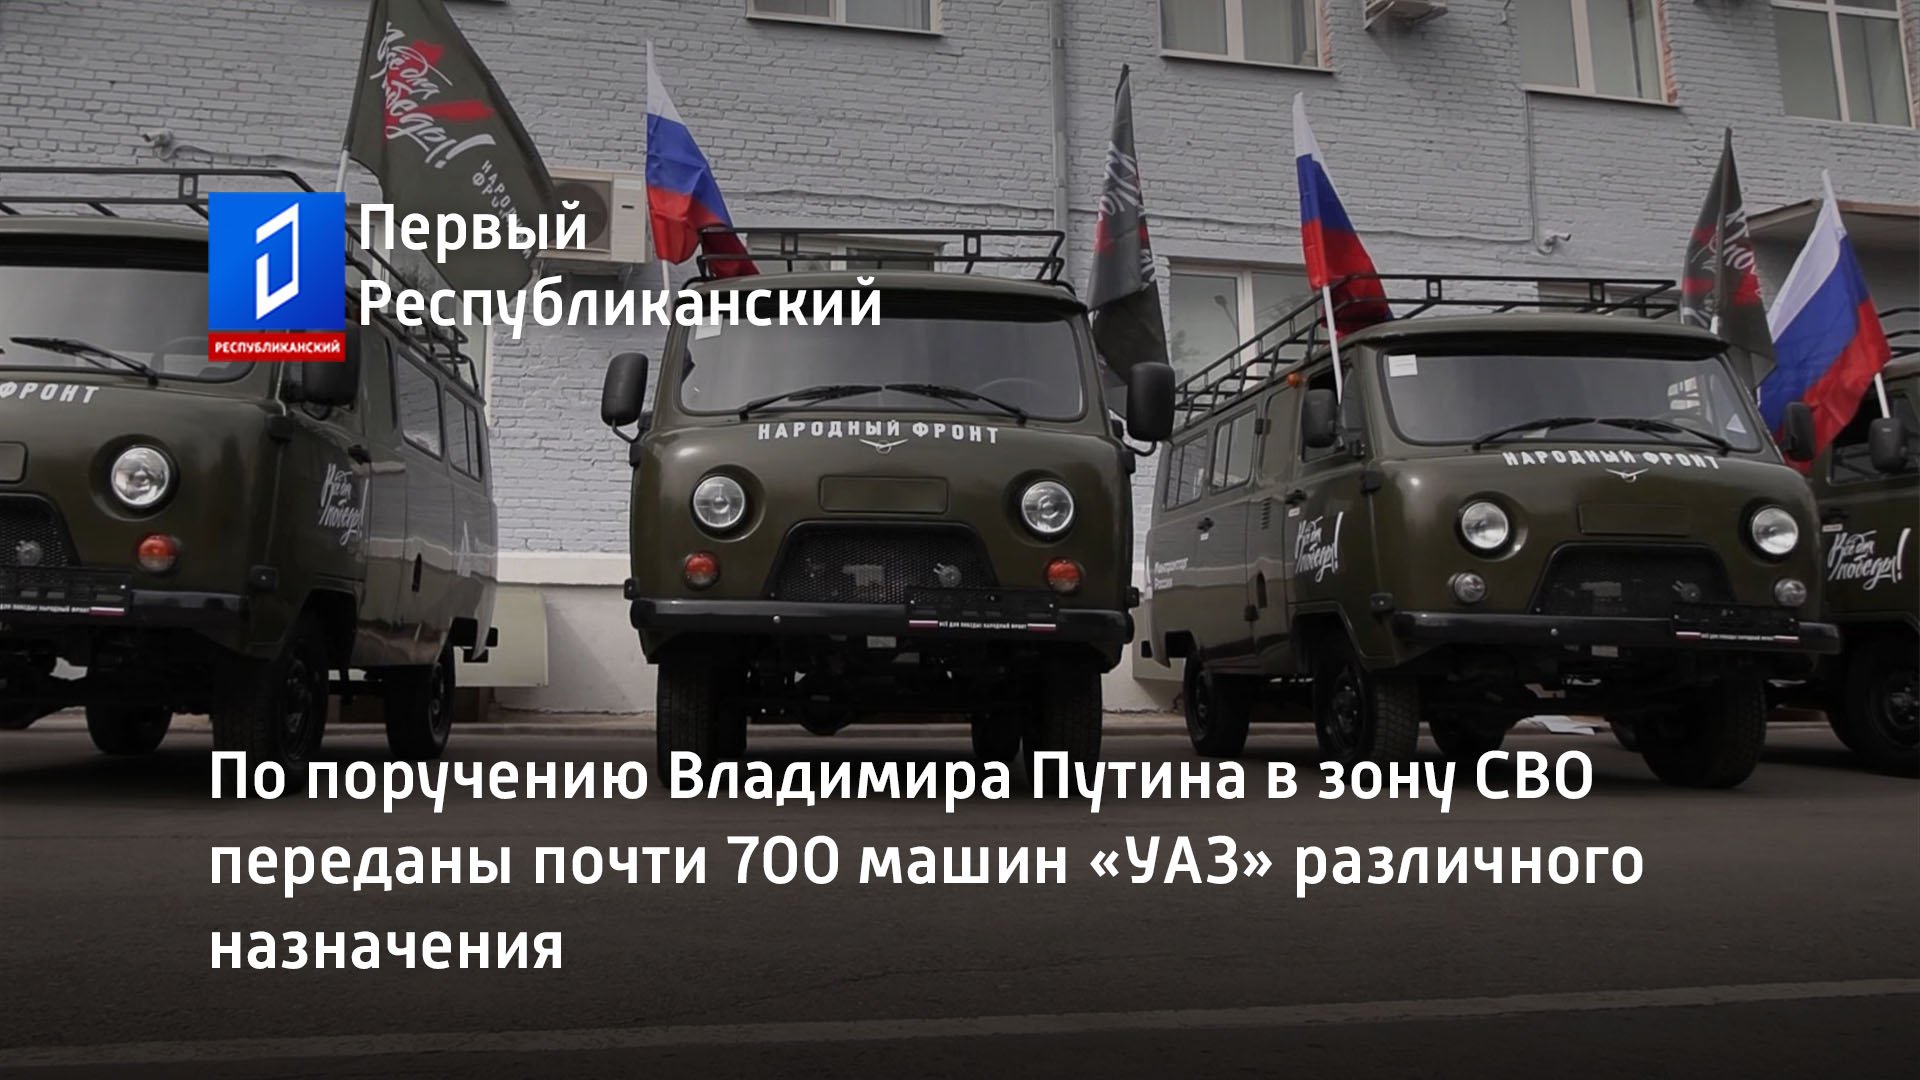 По поручению Владимира Путина в зону СВО переданы почти 700 машин «УАЗ» различного назначения